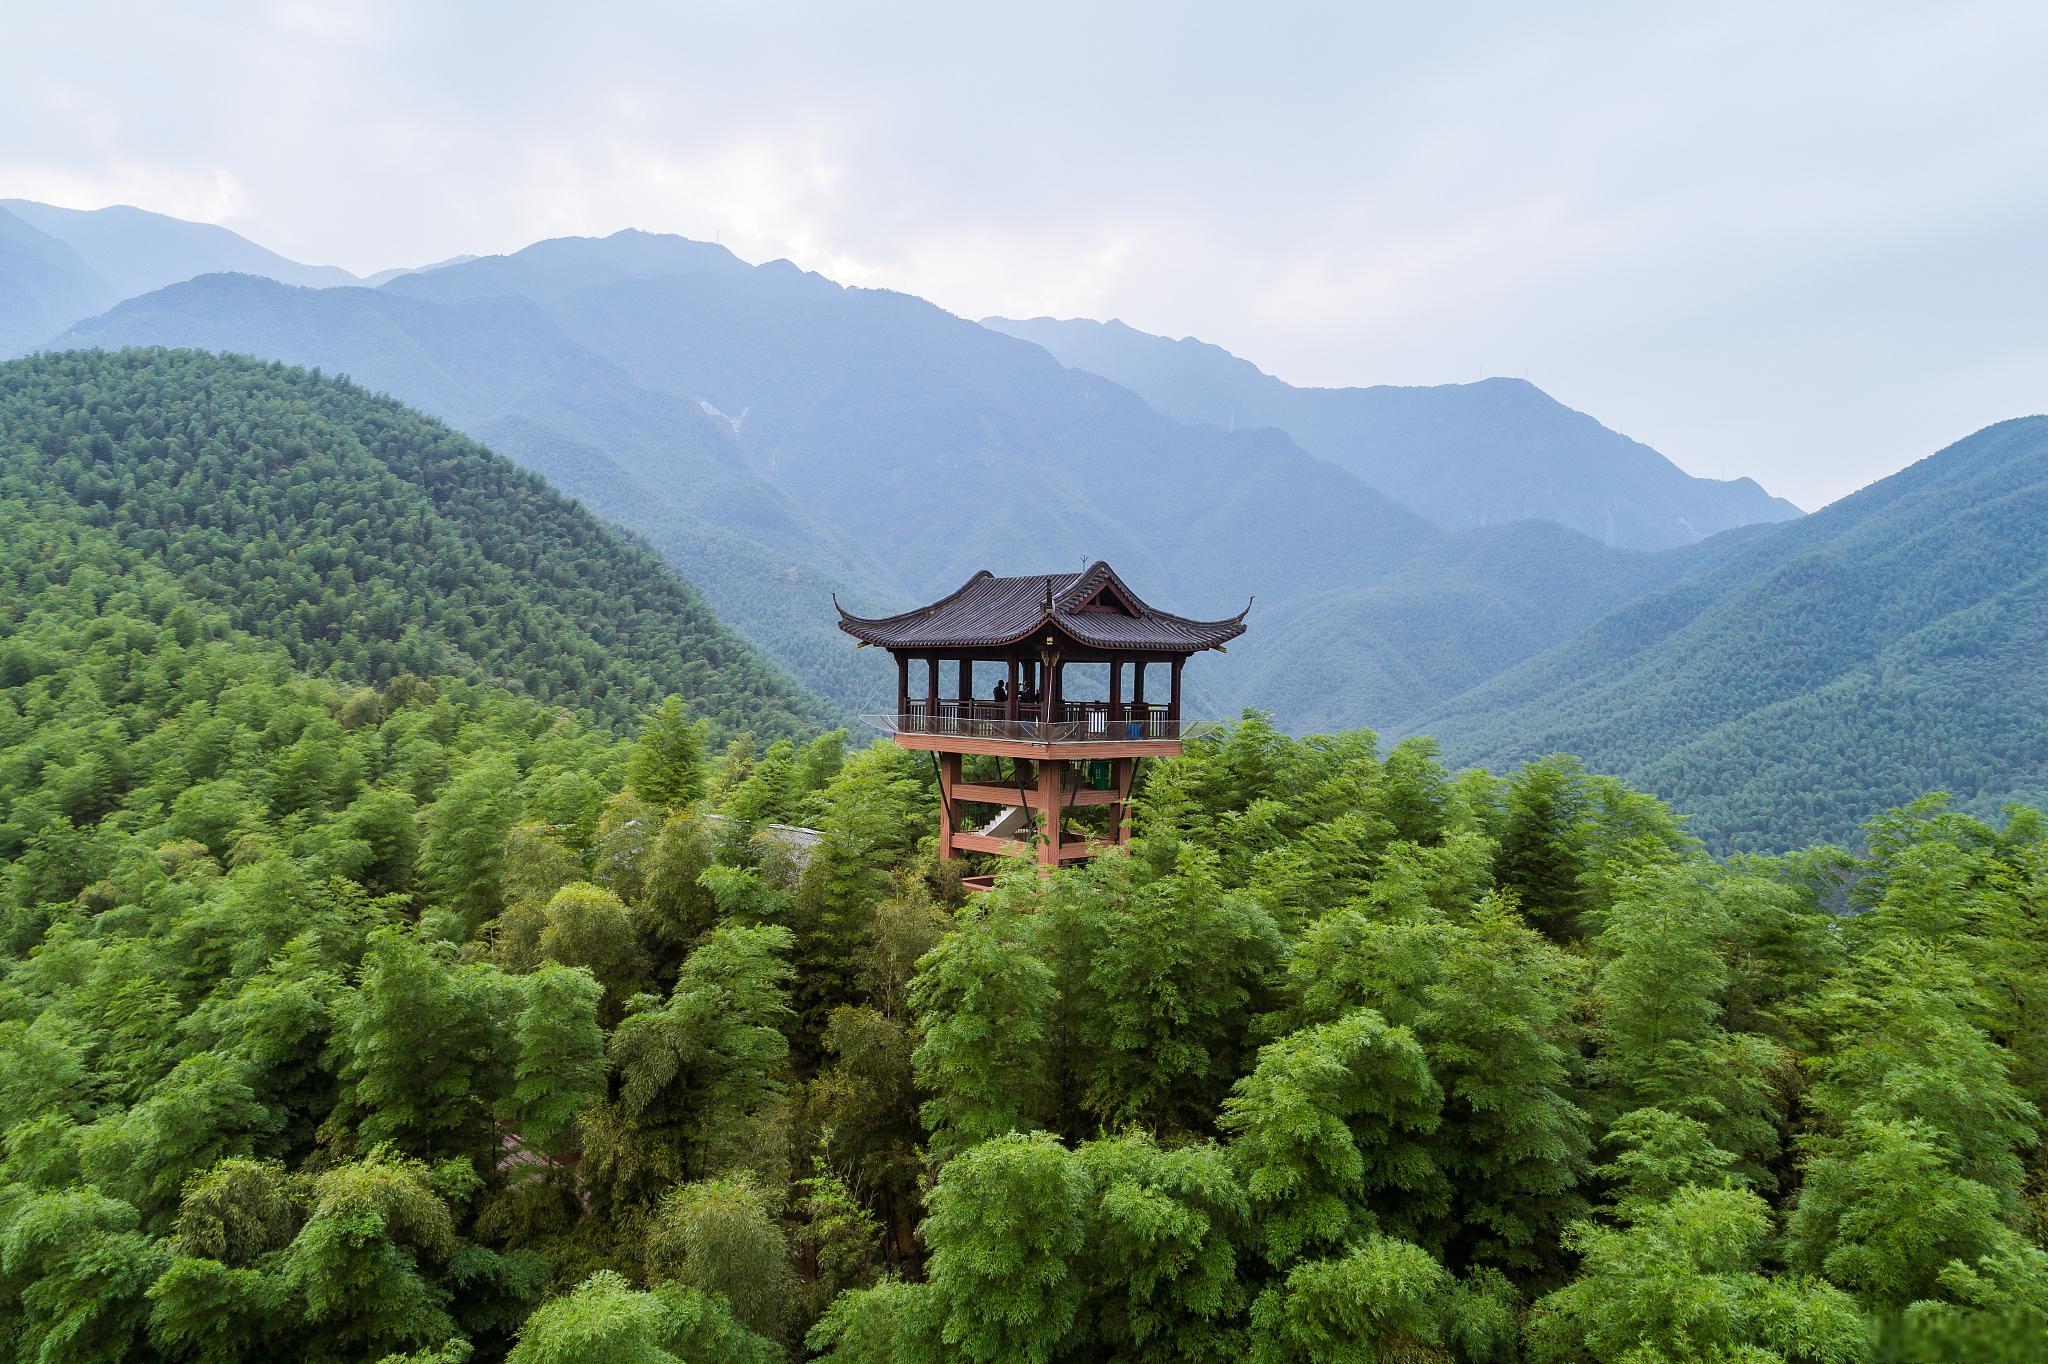 安吉大竹海景区,竹海之美 在中国浙江省的安吉县,有一个被誉为中国